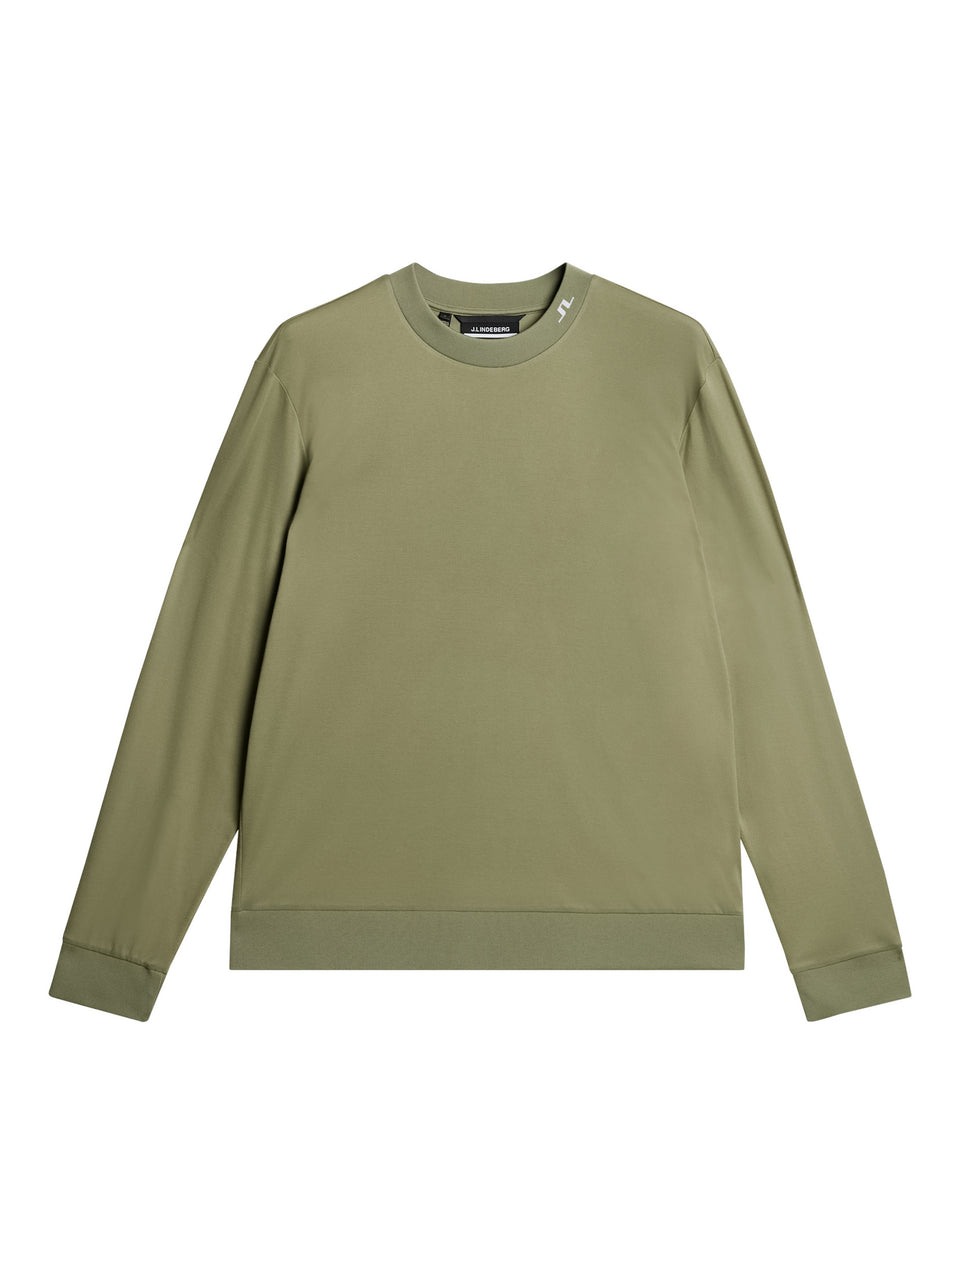 Jones Jersey Sweater / Oil Green